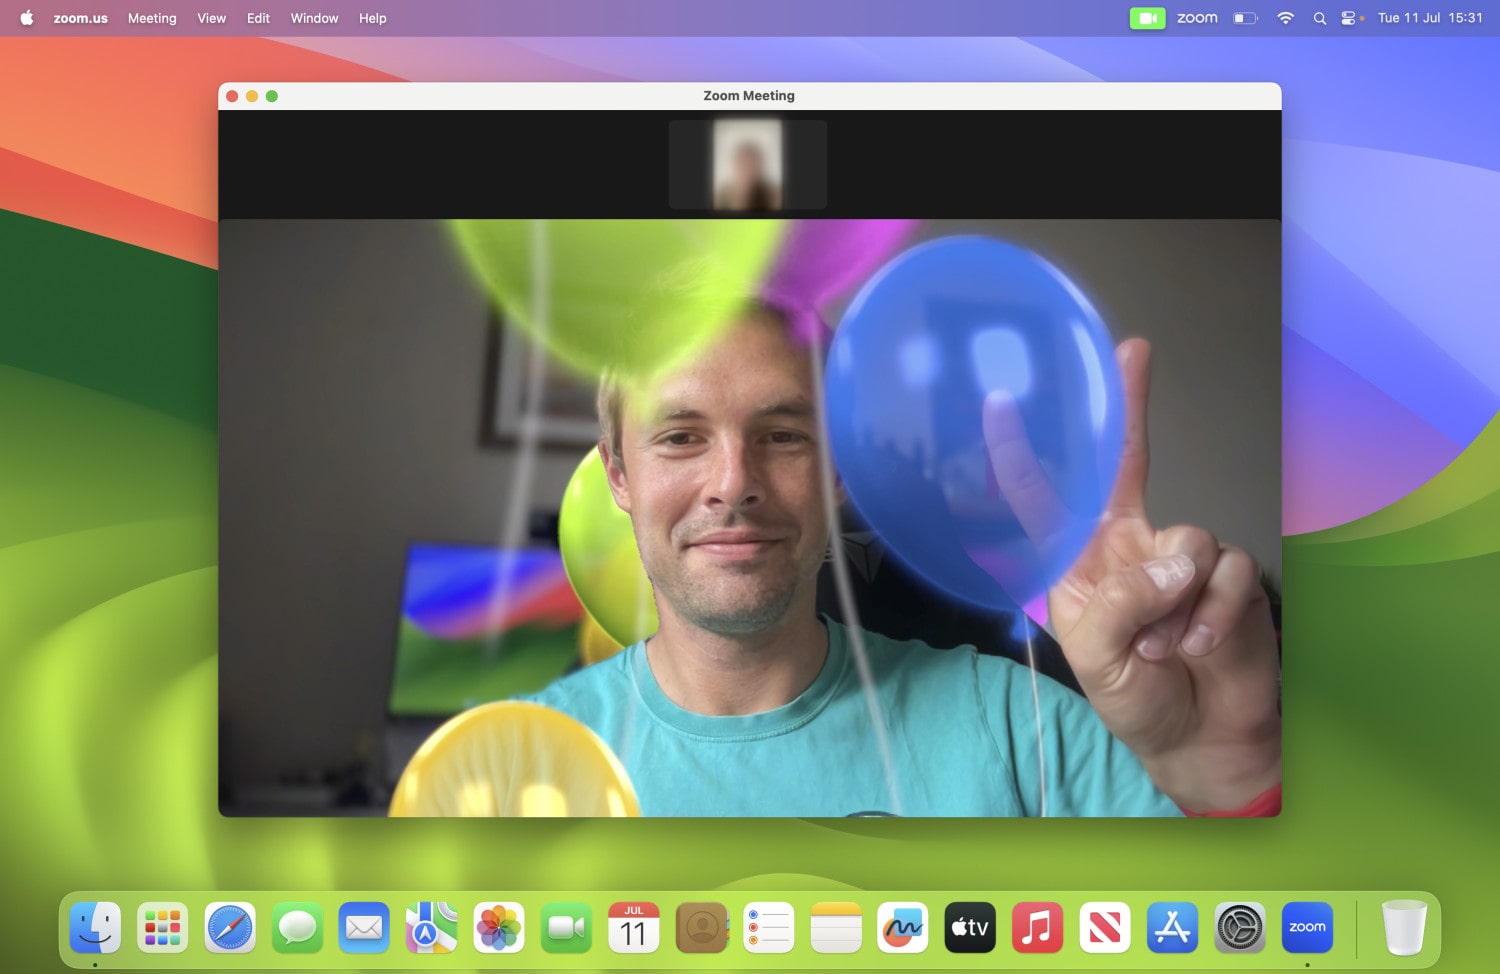 उपयोग में गुब्बारे प्रभाव के साथ, macOS सोनोमा में वीडियो प्रतिक्रियाएं।